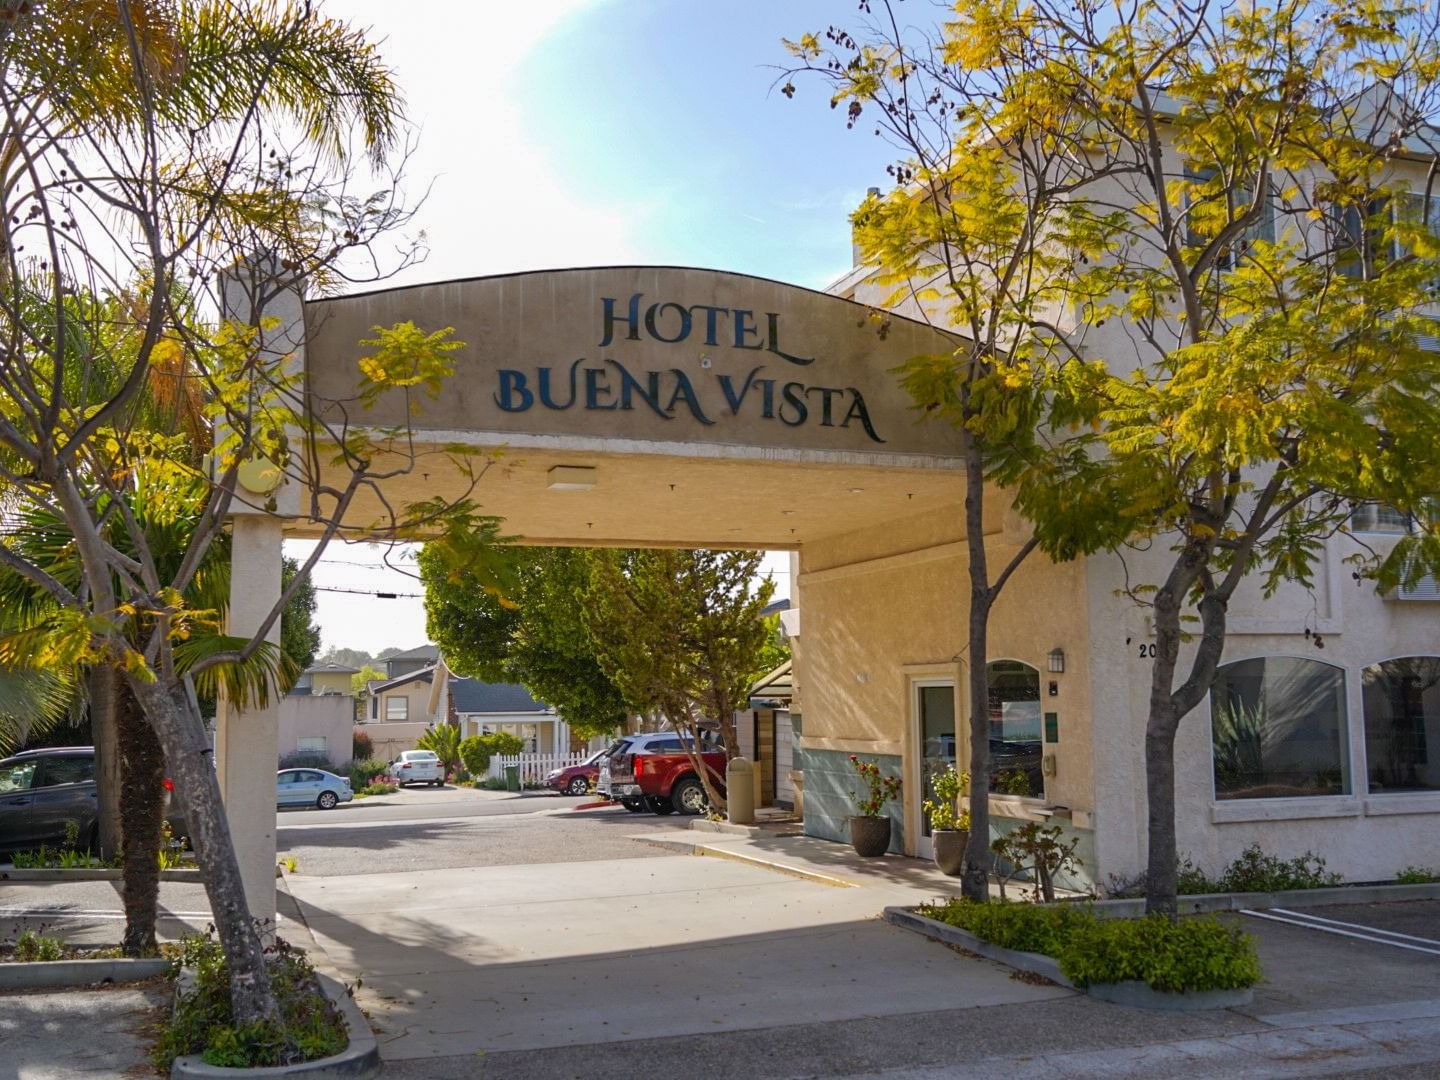 Entrance arch of Hotel Buena Vista San Luis Obispo